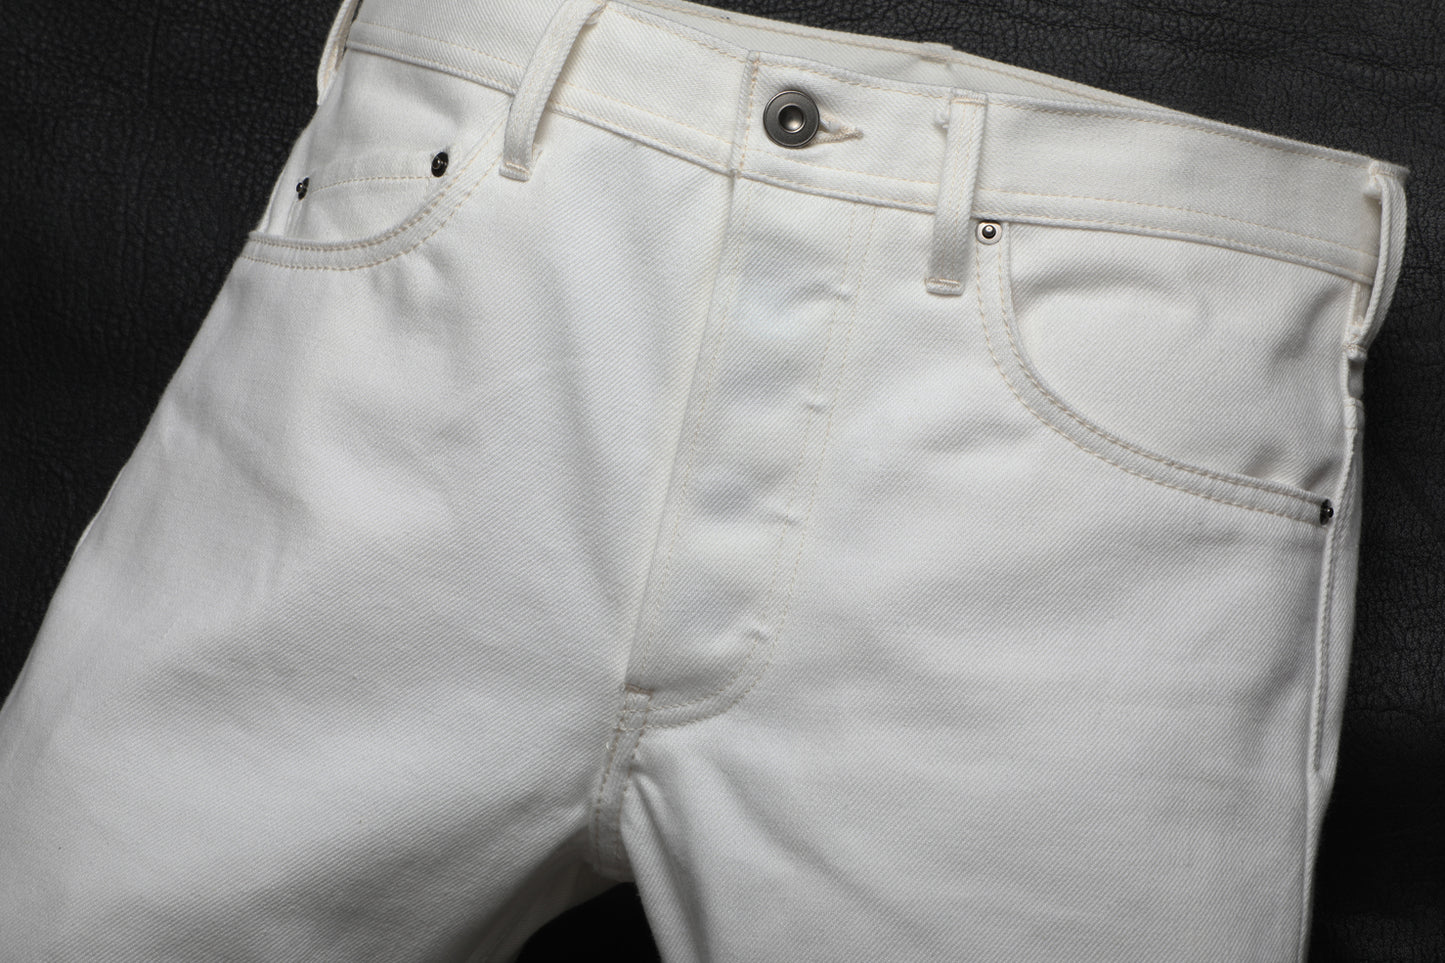 【限定】"2001" Slim Tapered Jeans White 12.5oz